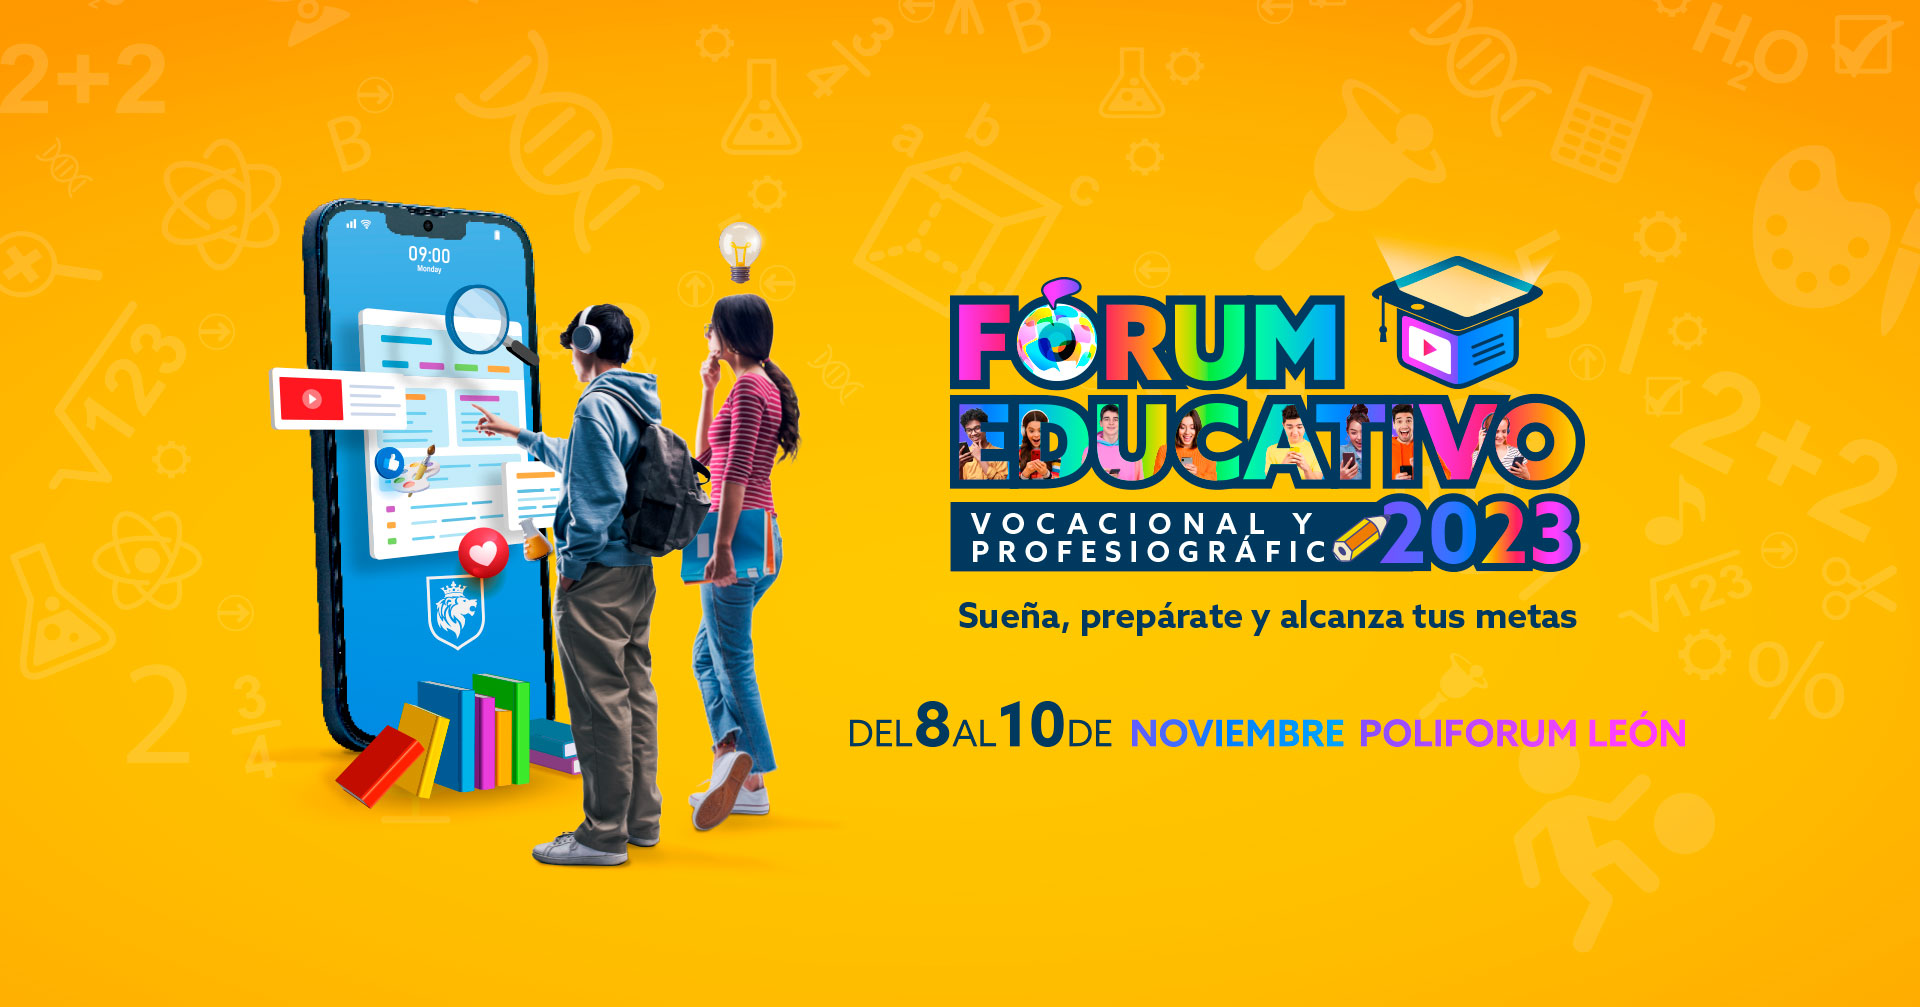 Forum Educativo Voccional y Profesiográfico